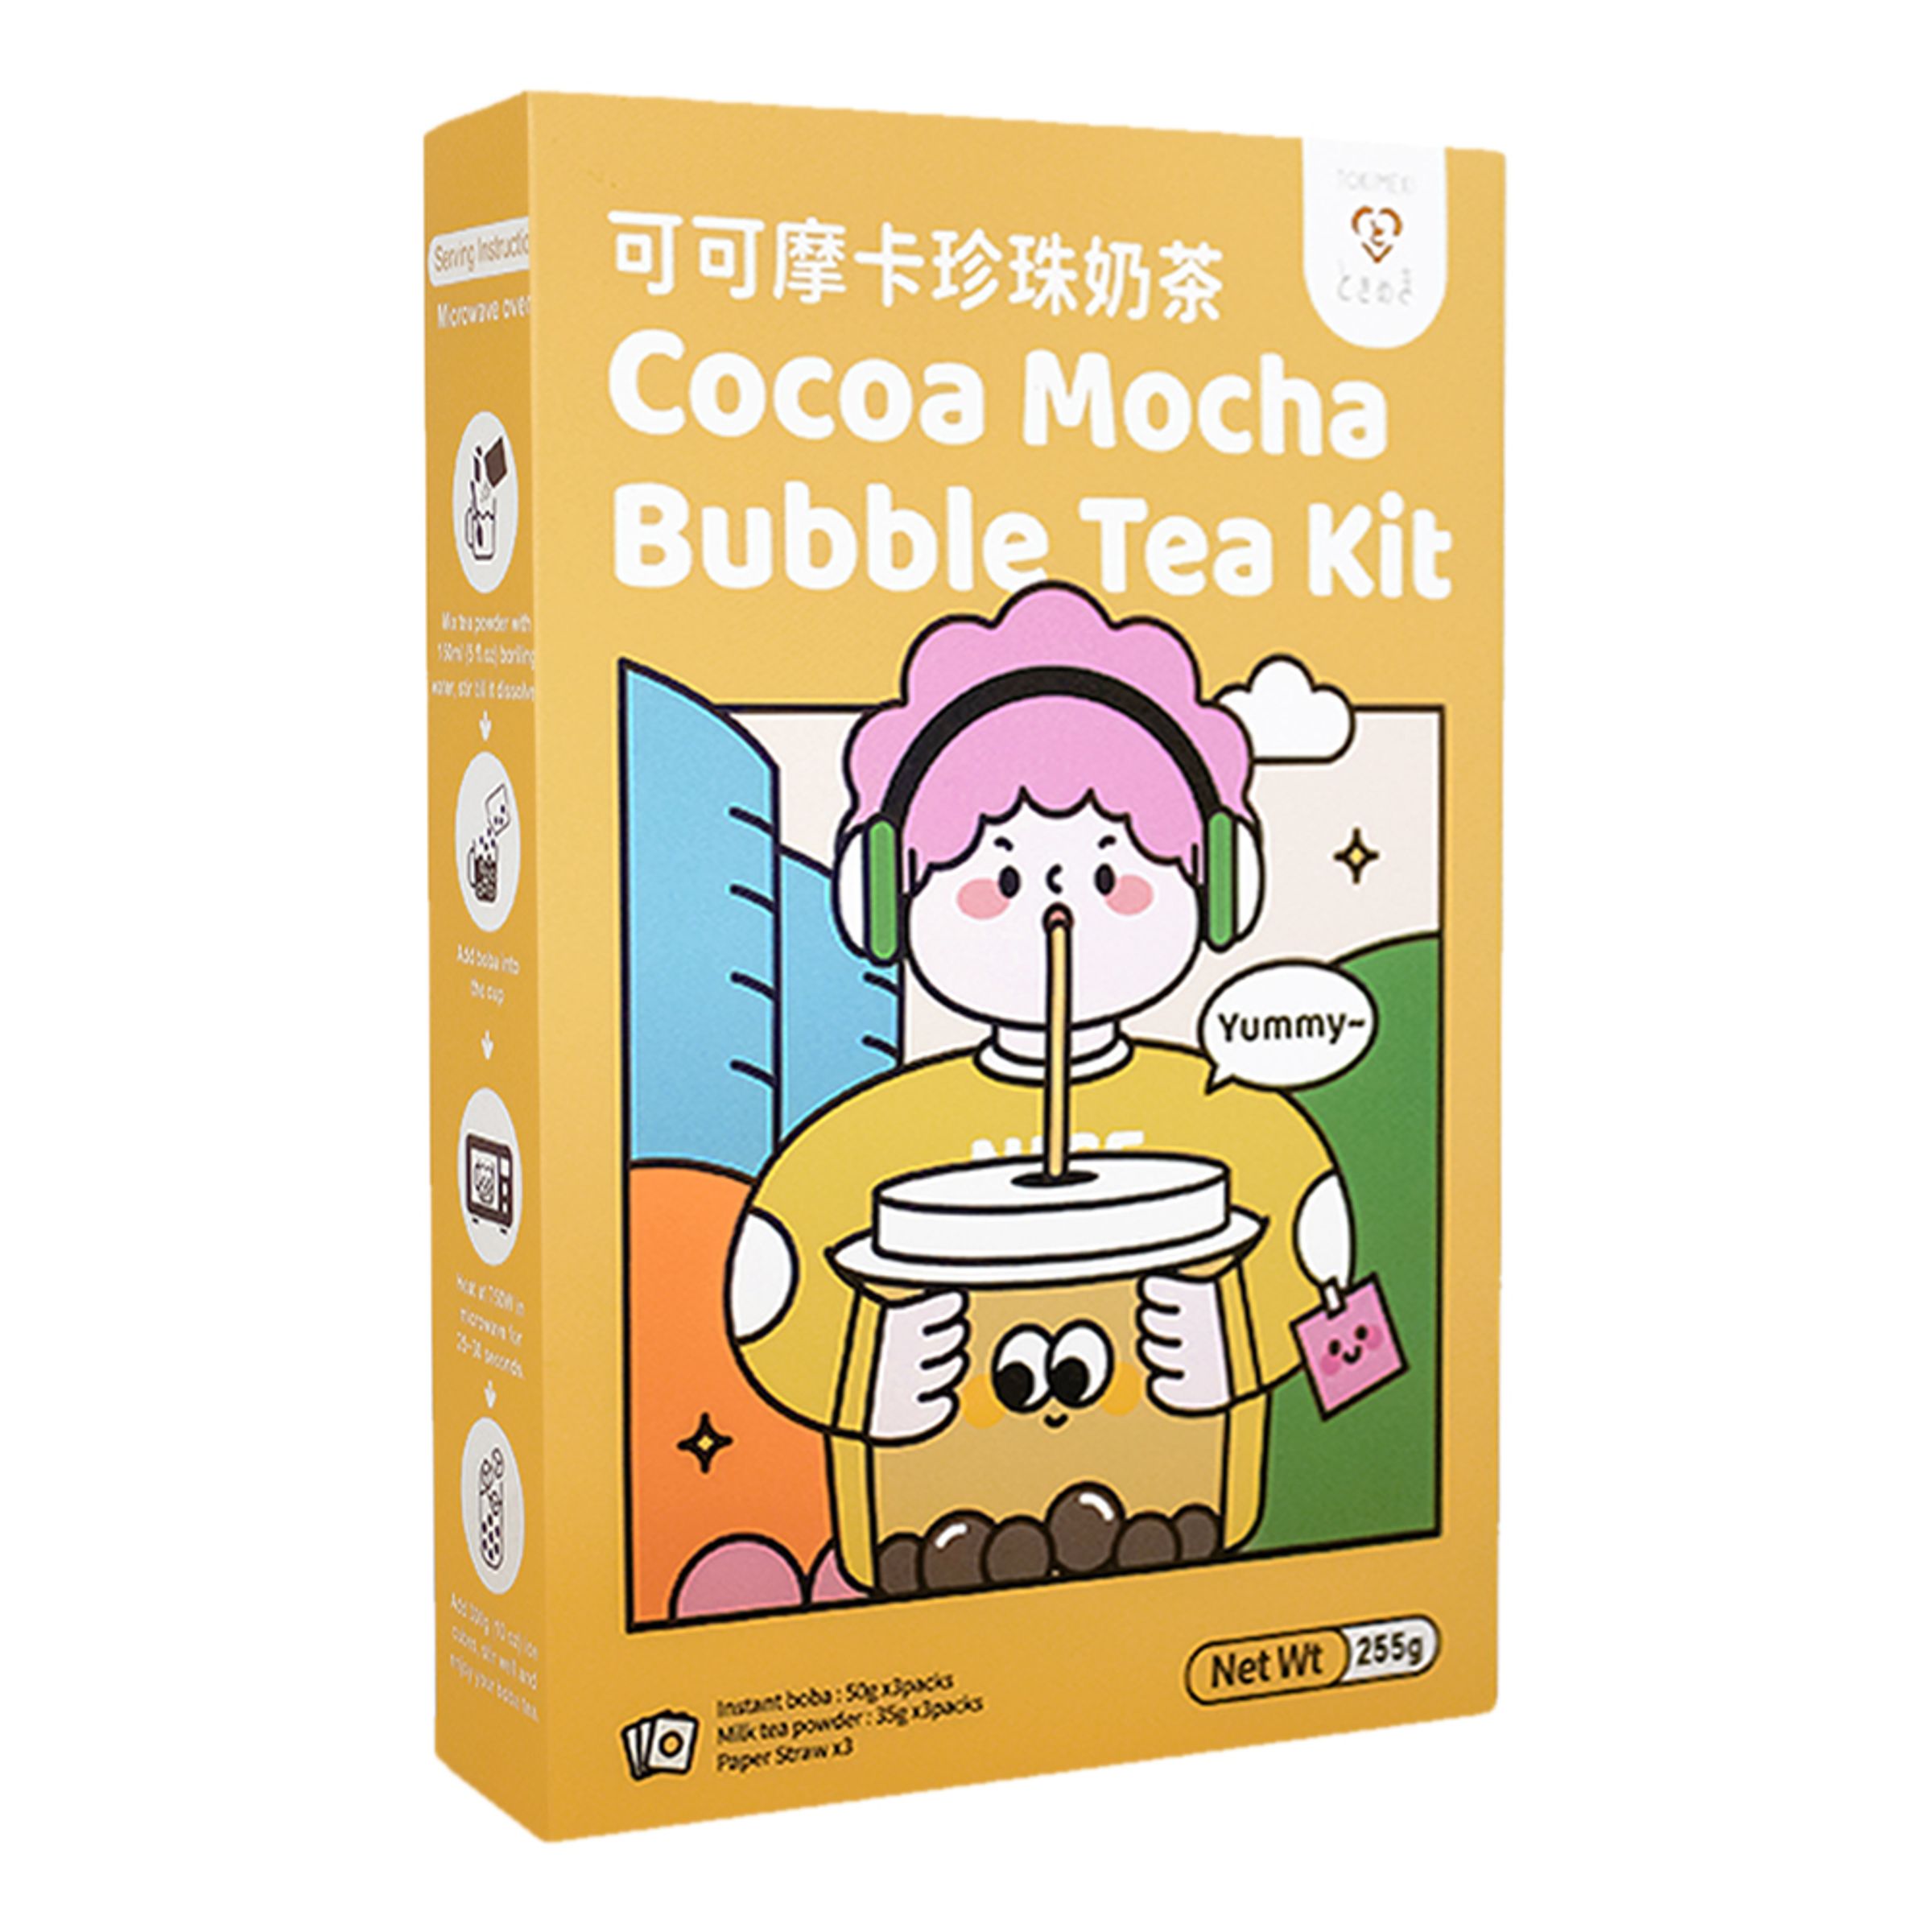 Tokimeki Cocoa Mocha Bubble Tea Kit - 3-pack